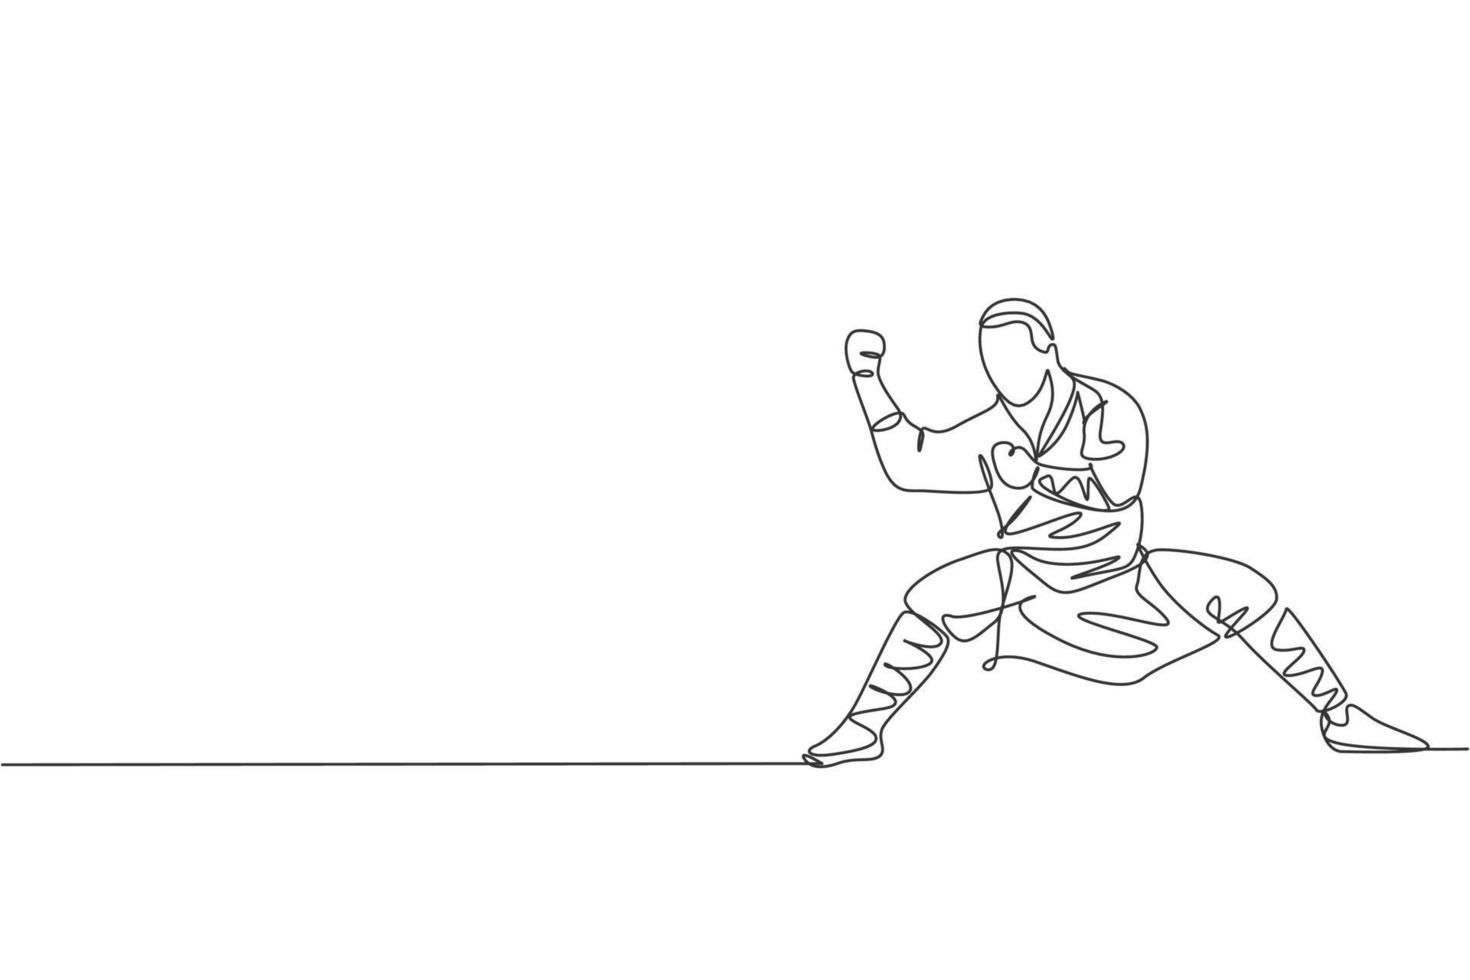 enda kontinuerlig linjeteckning ung muskulös shaolin munk man tränar kampsport på shaolin tempel. traditionell kinesisk kung fu kamp koncept. trendiga en rad rita grafisk design vektorillustration vektor